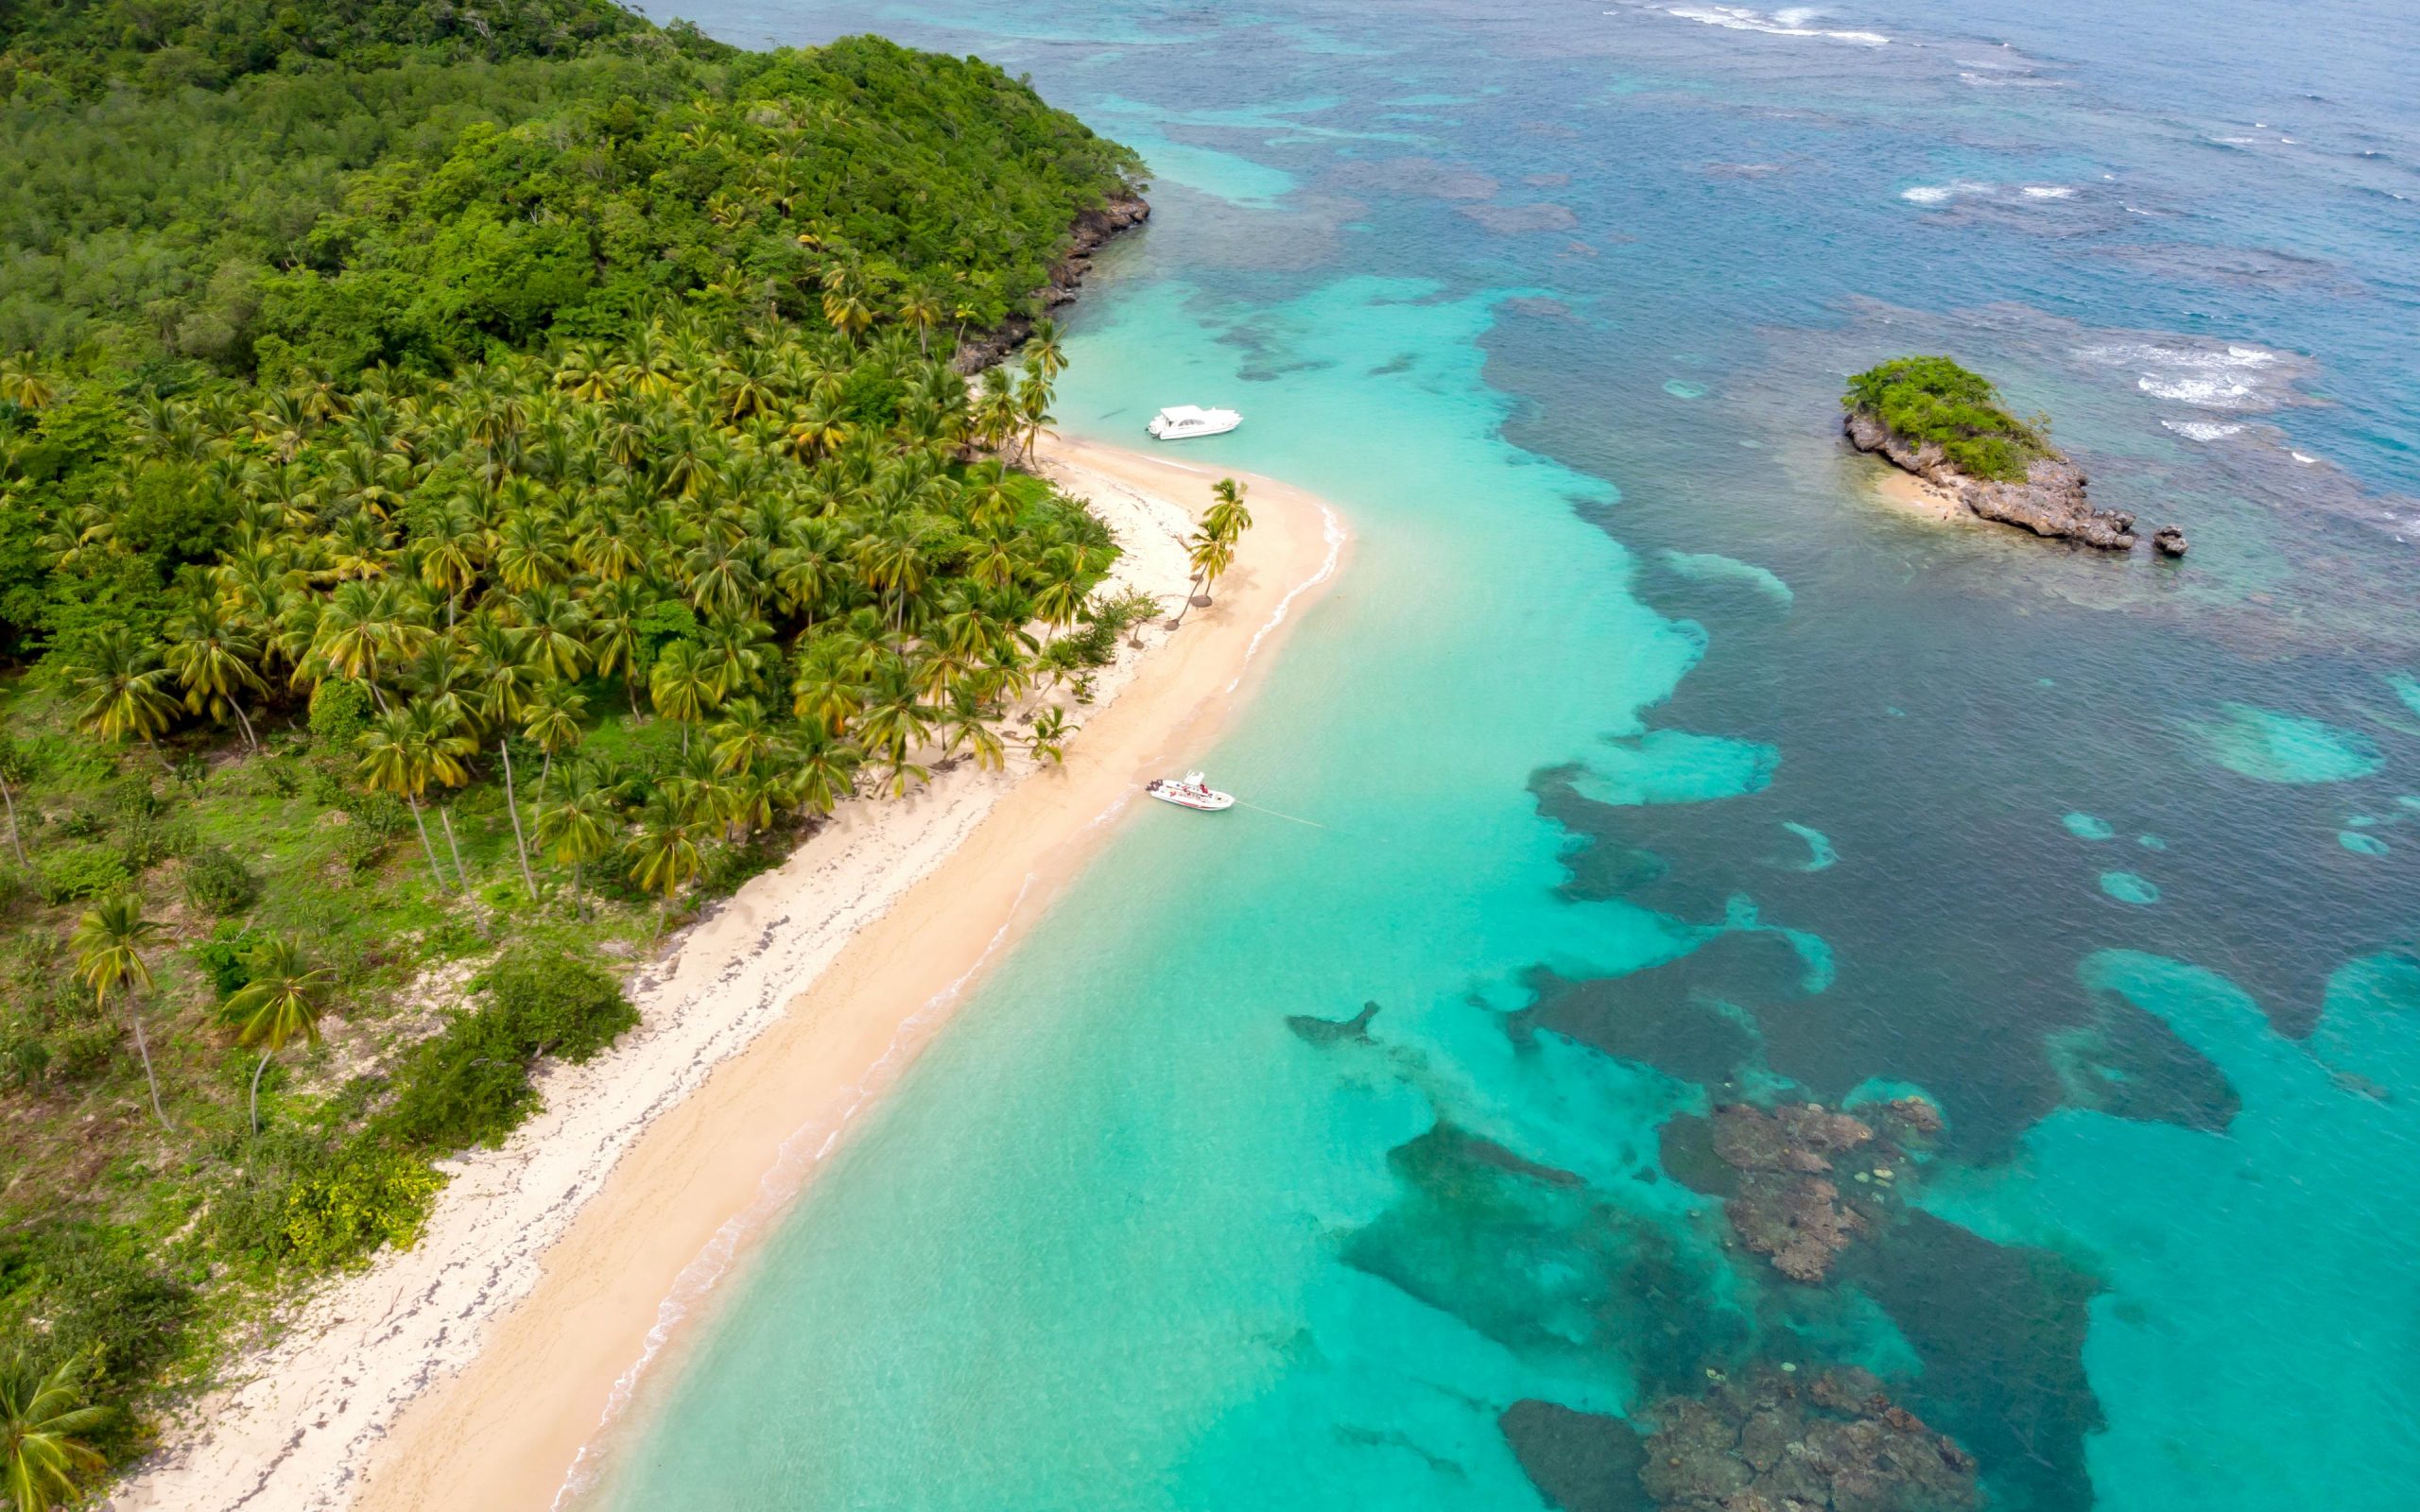 Over six million Dominicans embrace domestic tourism